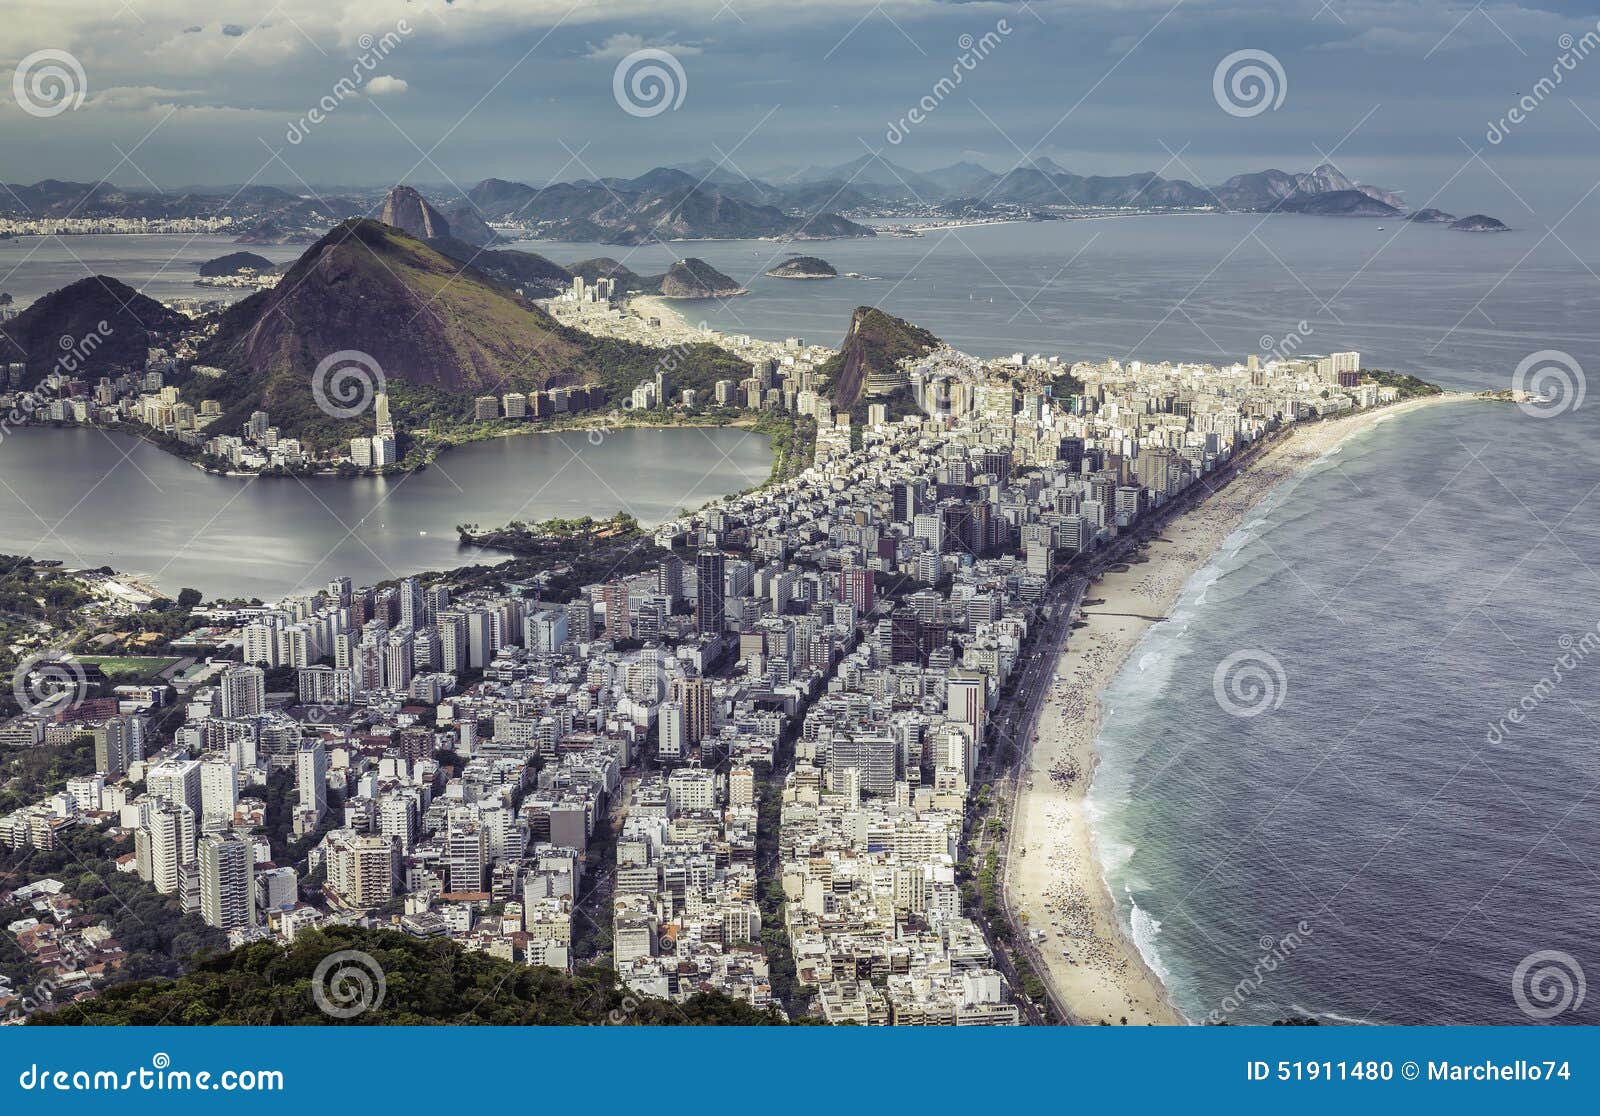 RPPC Aerial View COPACABANA Rio De Janeiro Brasil Coast Brazil Postcard 1960